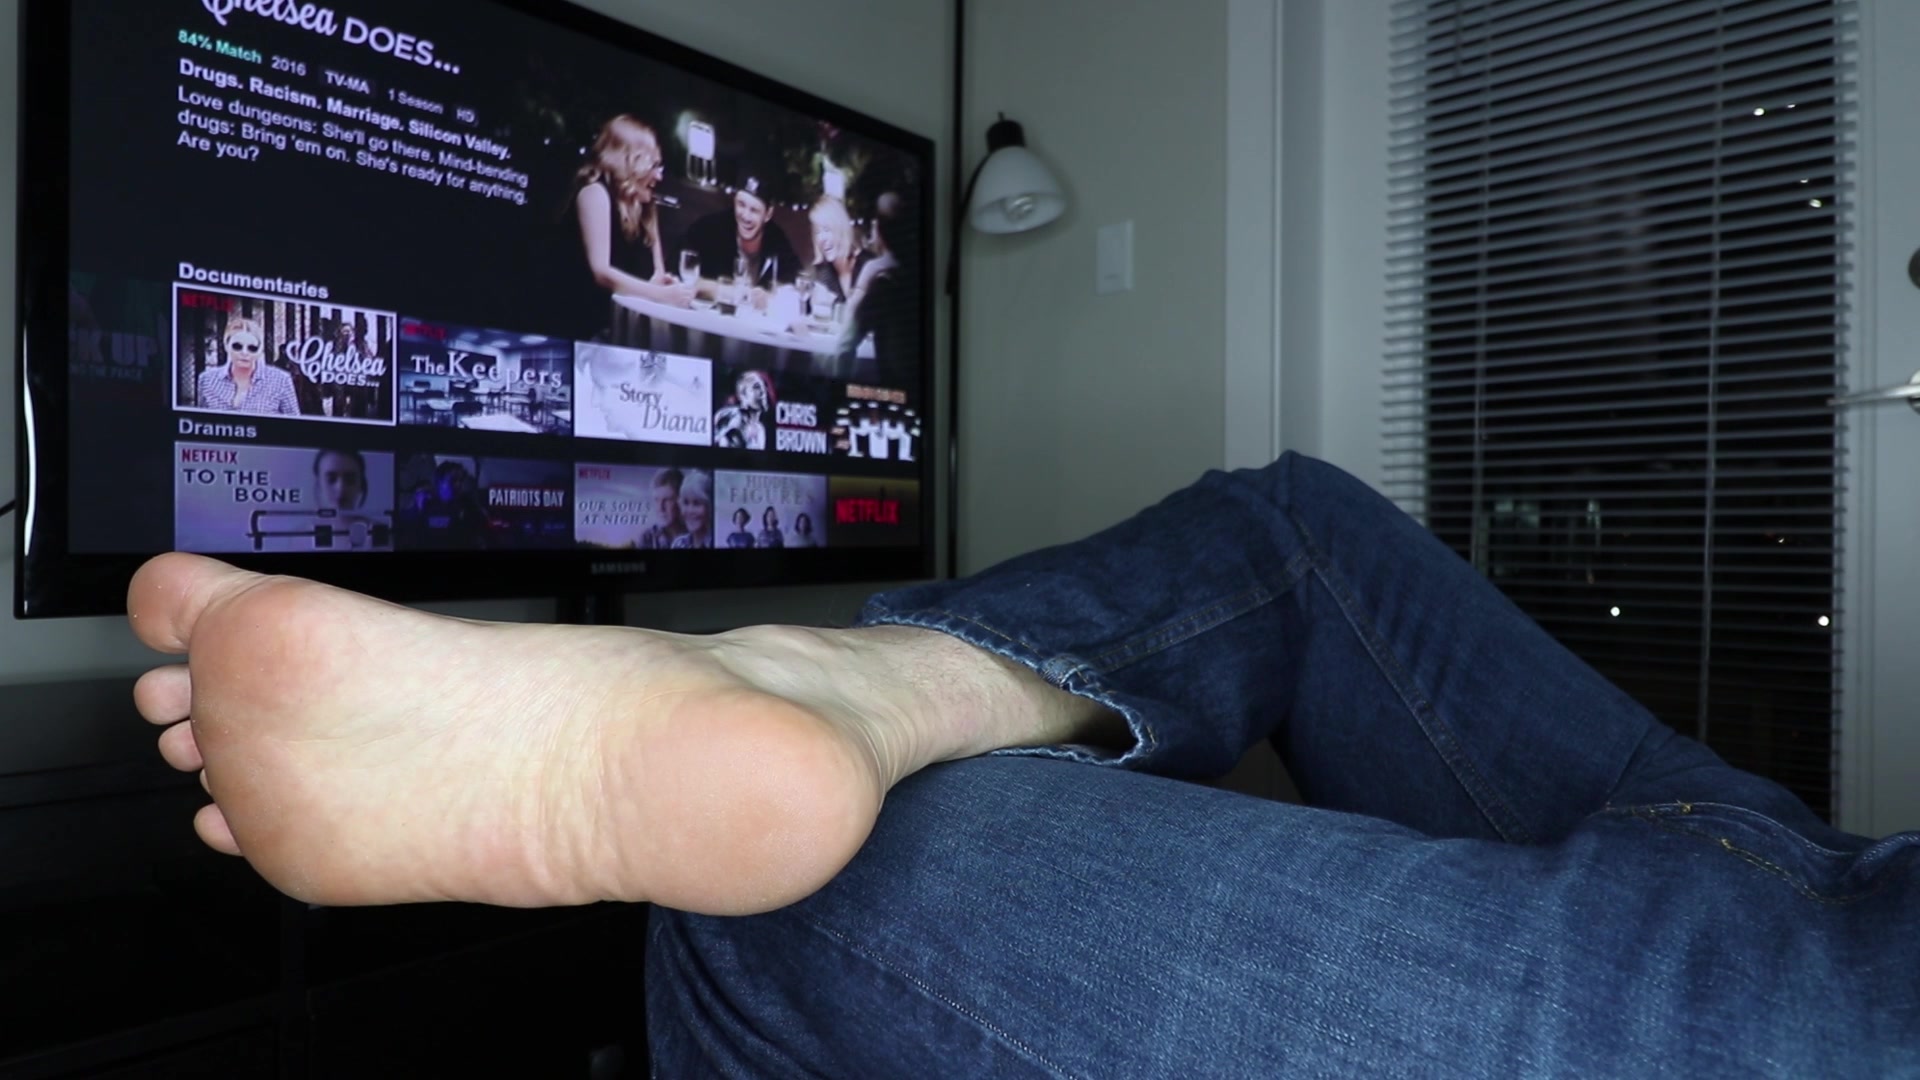 on Sofa big foot and dildo (footJOB)